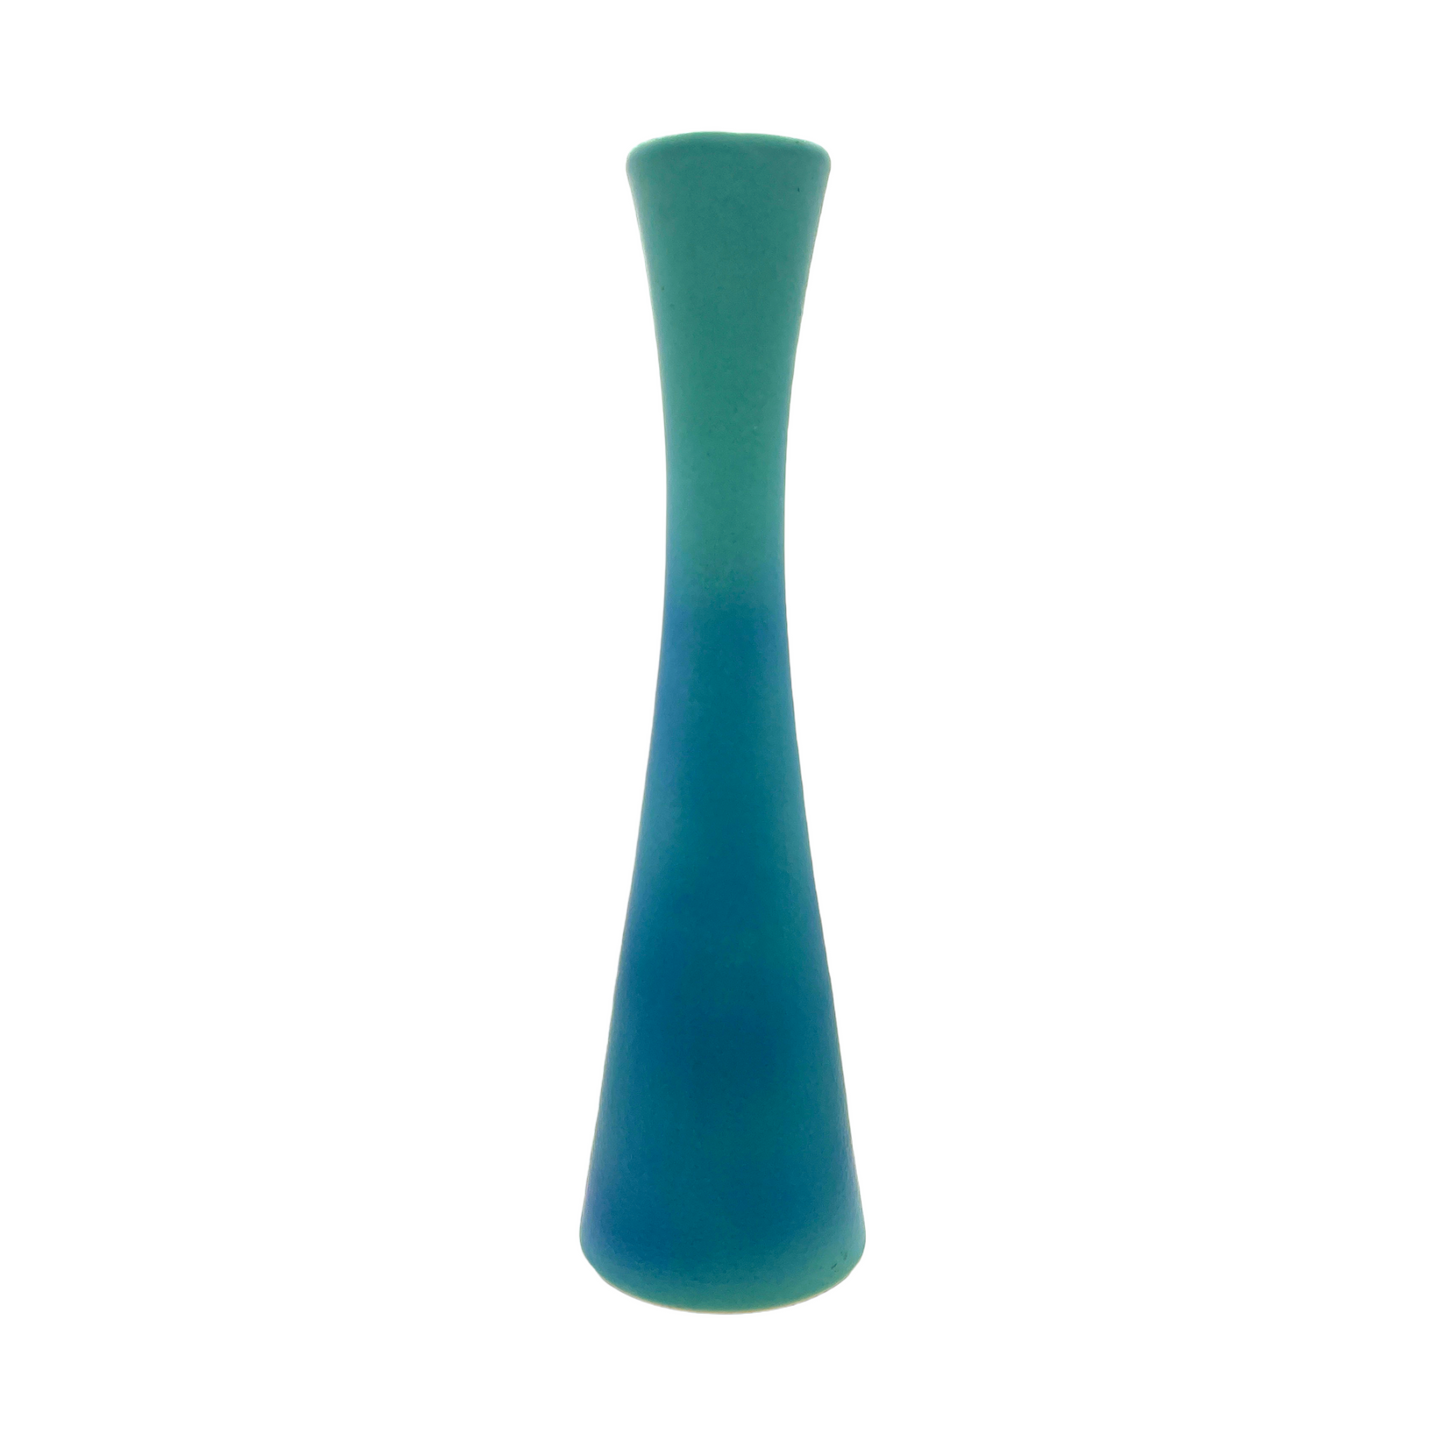 Van Briggle Potter - Ming Blue Corset Vase - Vintage - Mint - 15"